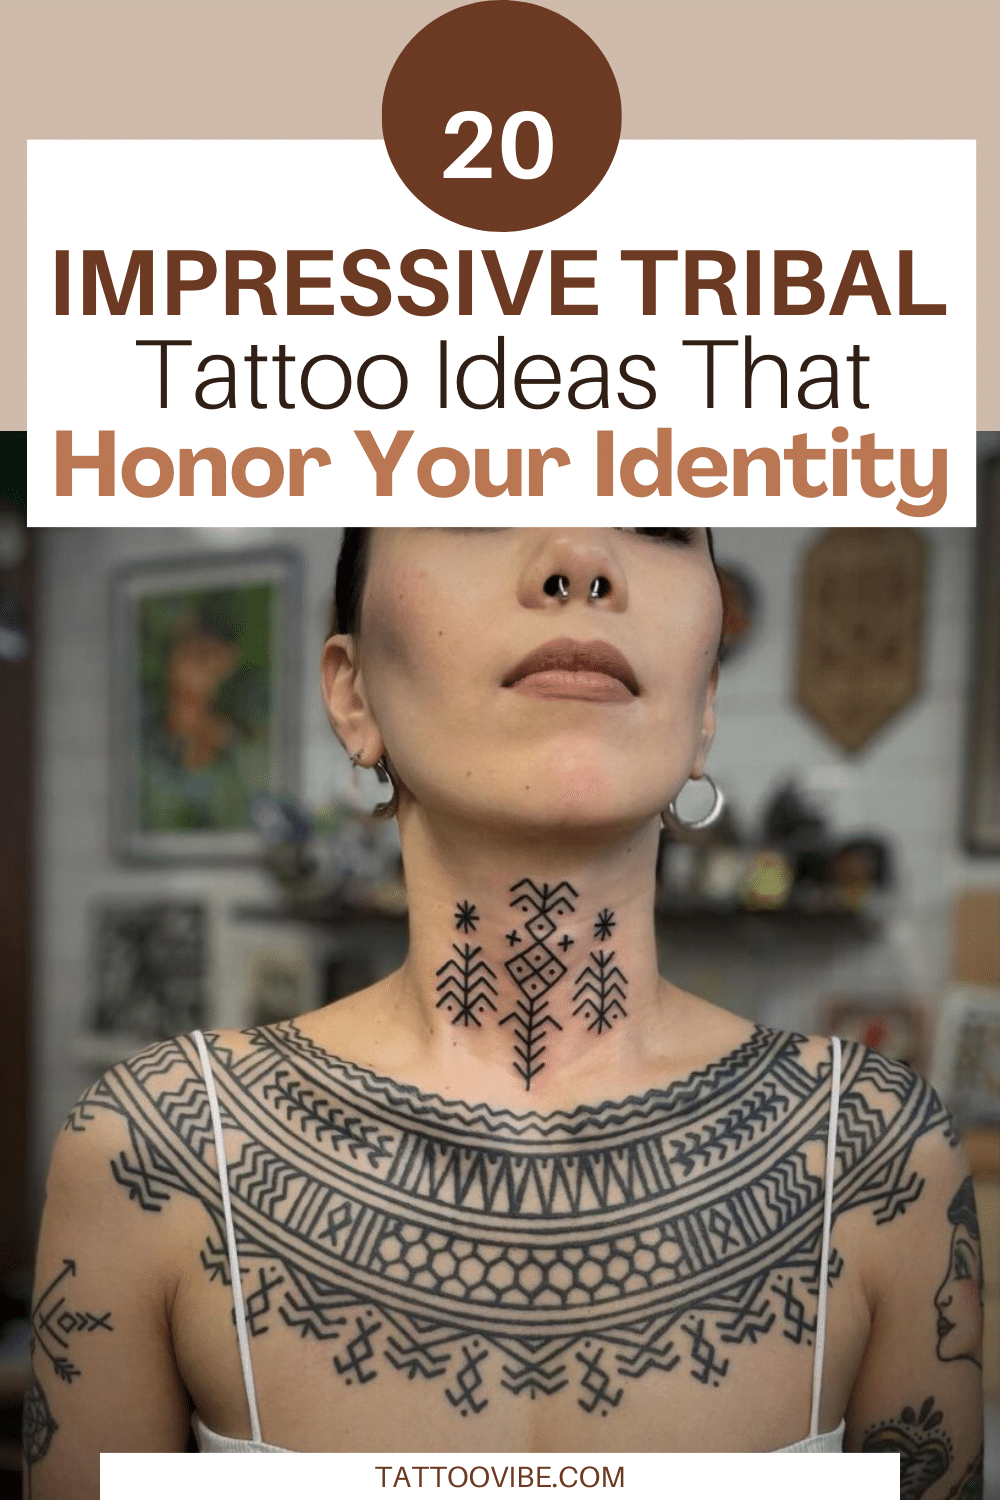 20 idées impressionnantes de tatouages tribaux qui honorent votre identité